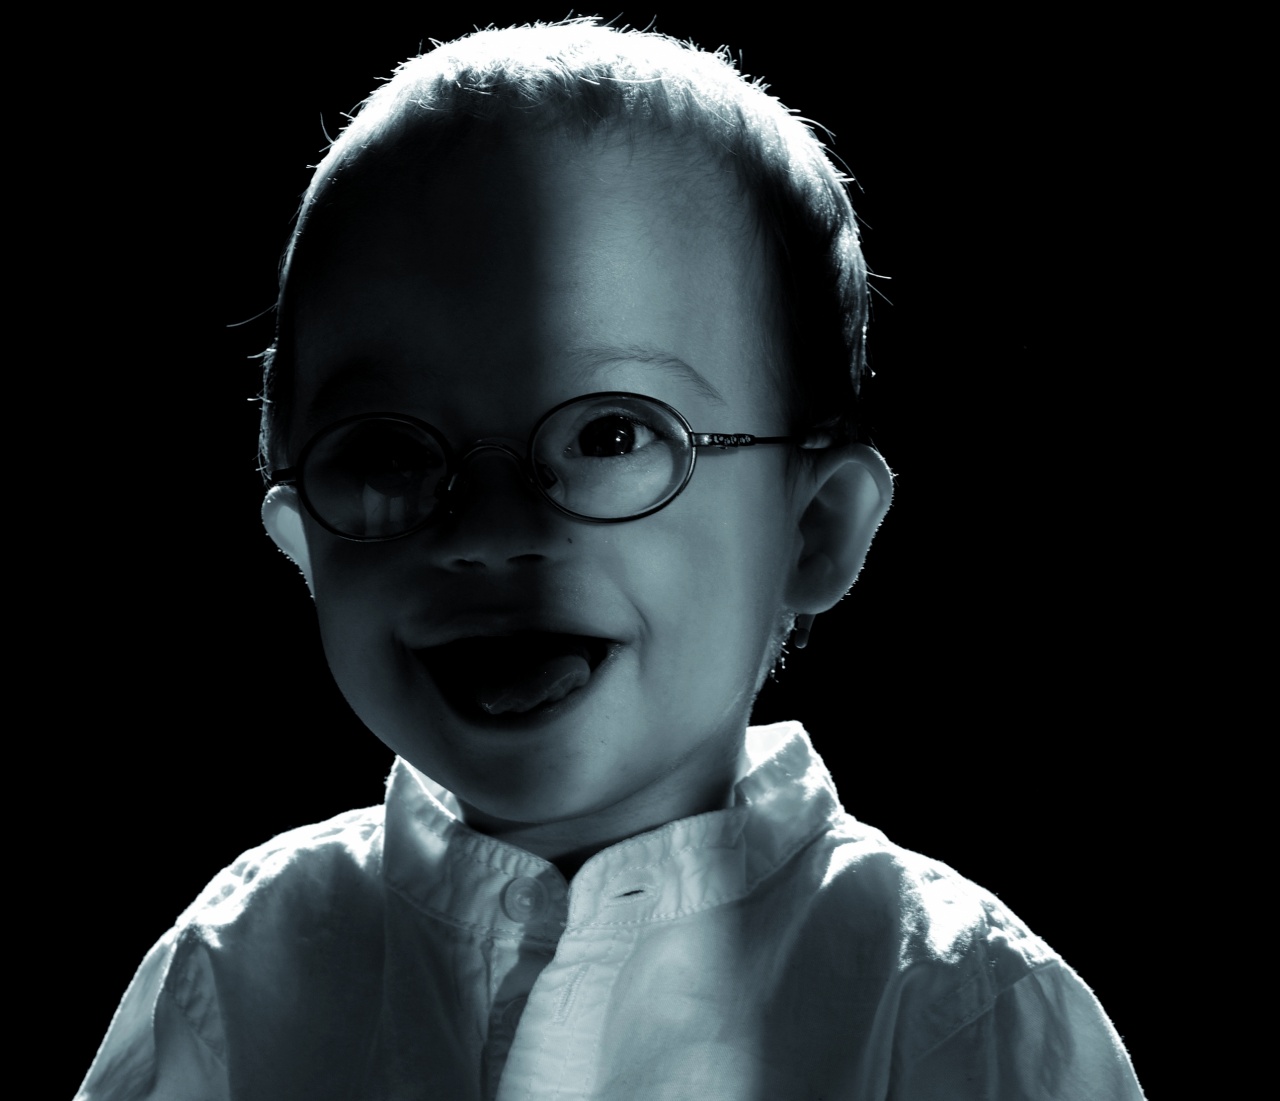 Schwarz-weiß Portrait von Matteo, er lacht und hat eine Brille an